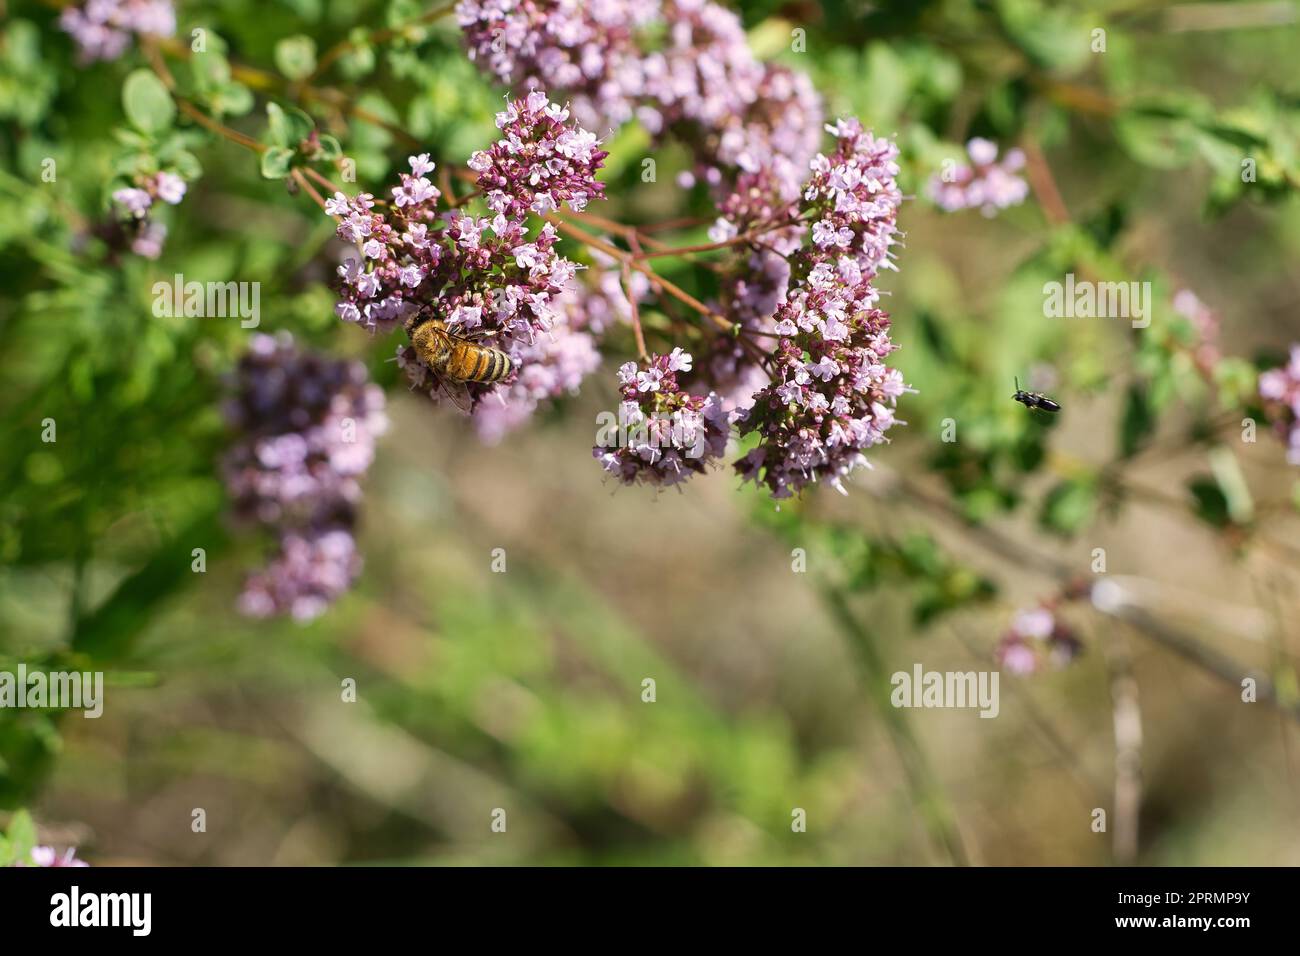 Honigbiene, die Nektar auf einer Blume des Schmetterlingsbusches sammelt. Beschäftigte Insekten Stockfoto